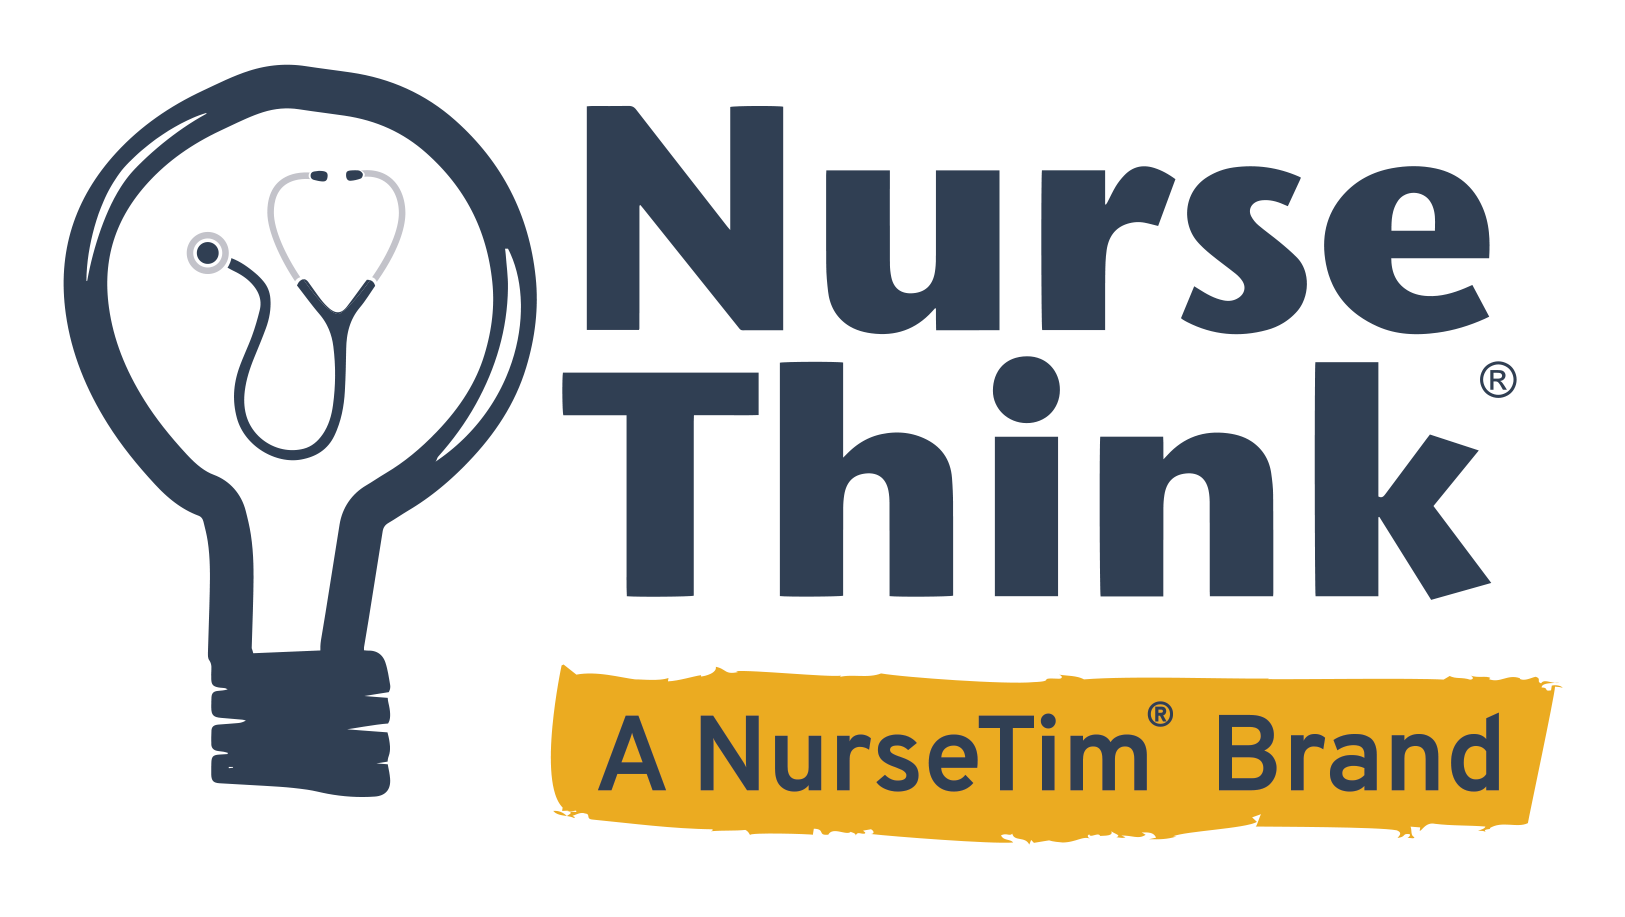 NurseThink: A NurseTim Brand logo